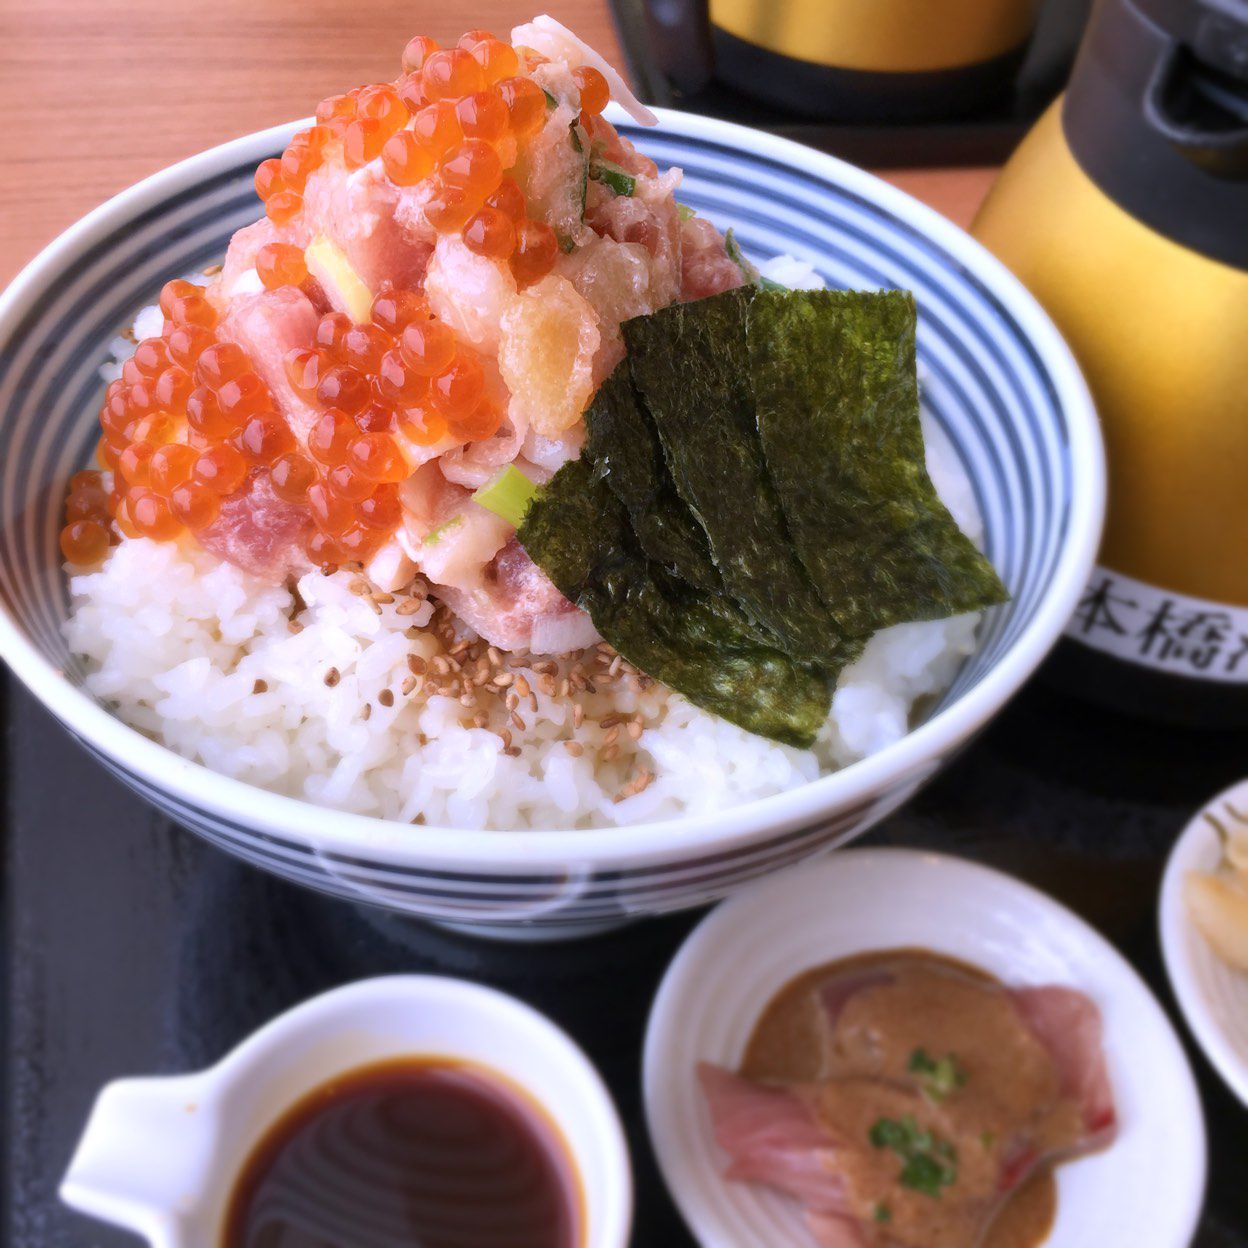 おいしい食事で幸せに 東京駅のおすすめグルメスポット30選 Retrip リトリップ